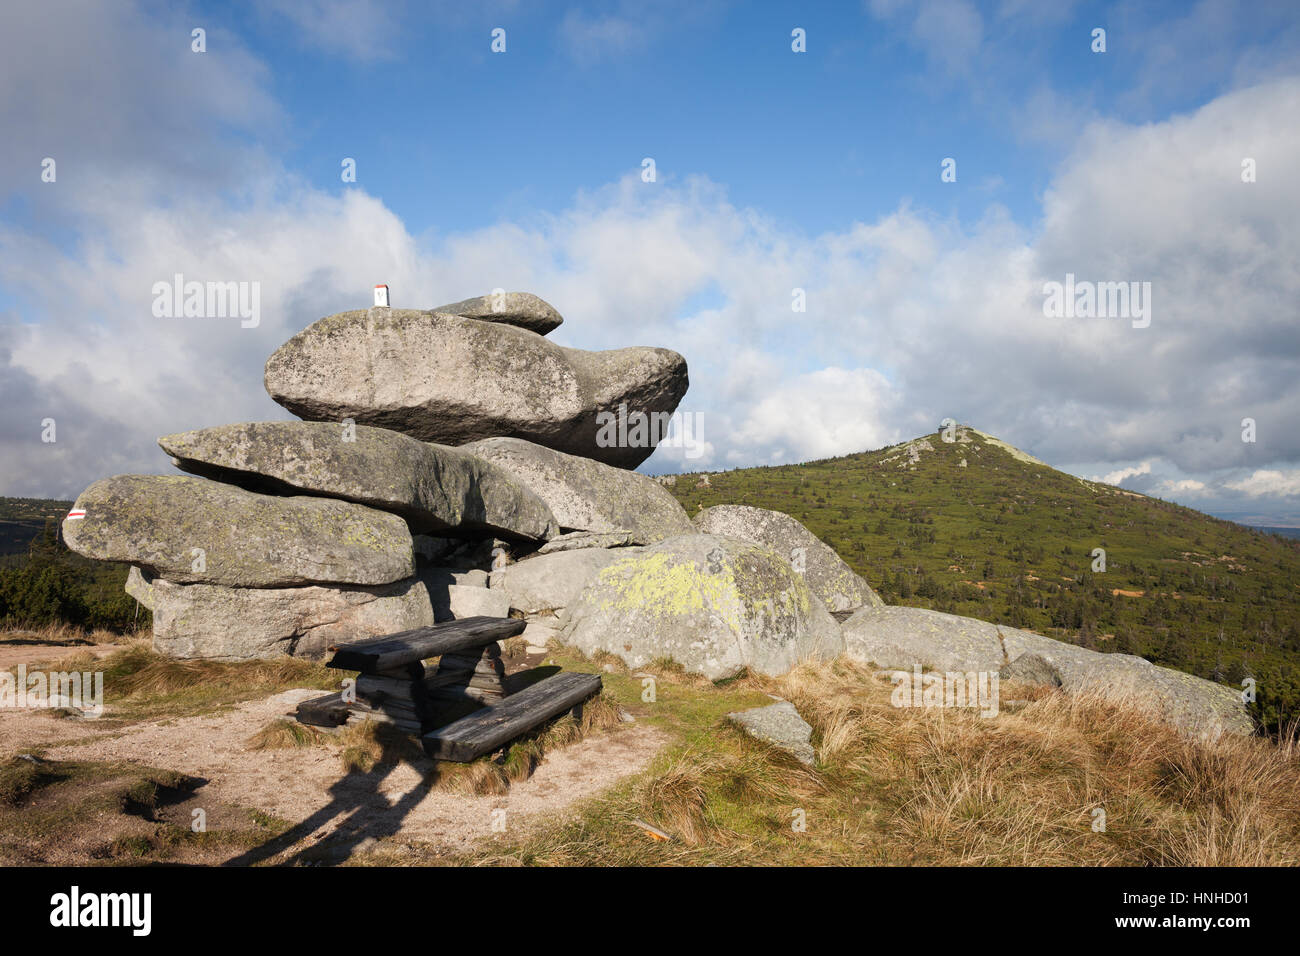 Tvaroznik rocce di granito in Krkonose - Monti Karkonosze sulla Repubblica Ceca e Polonia confine. Foto Stock